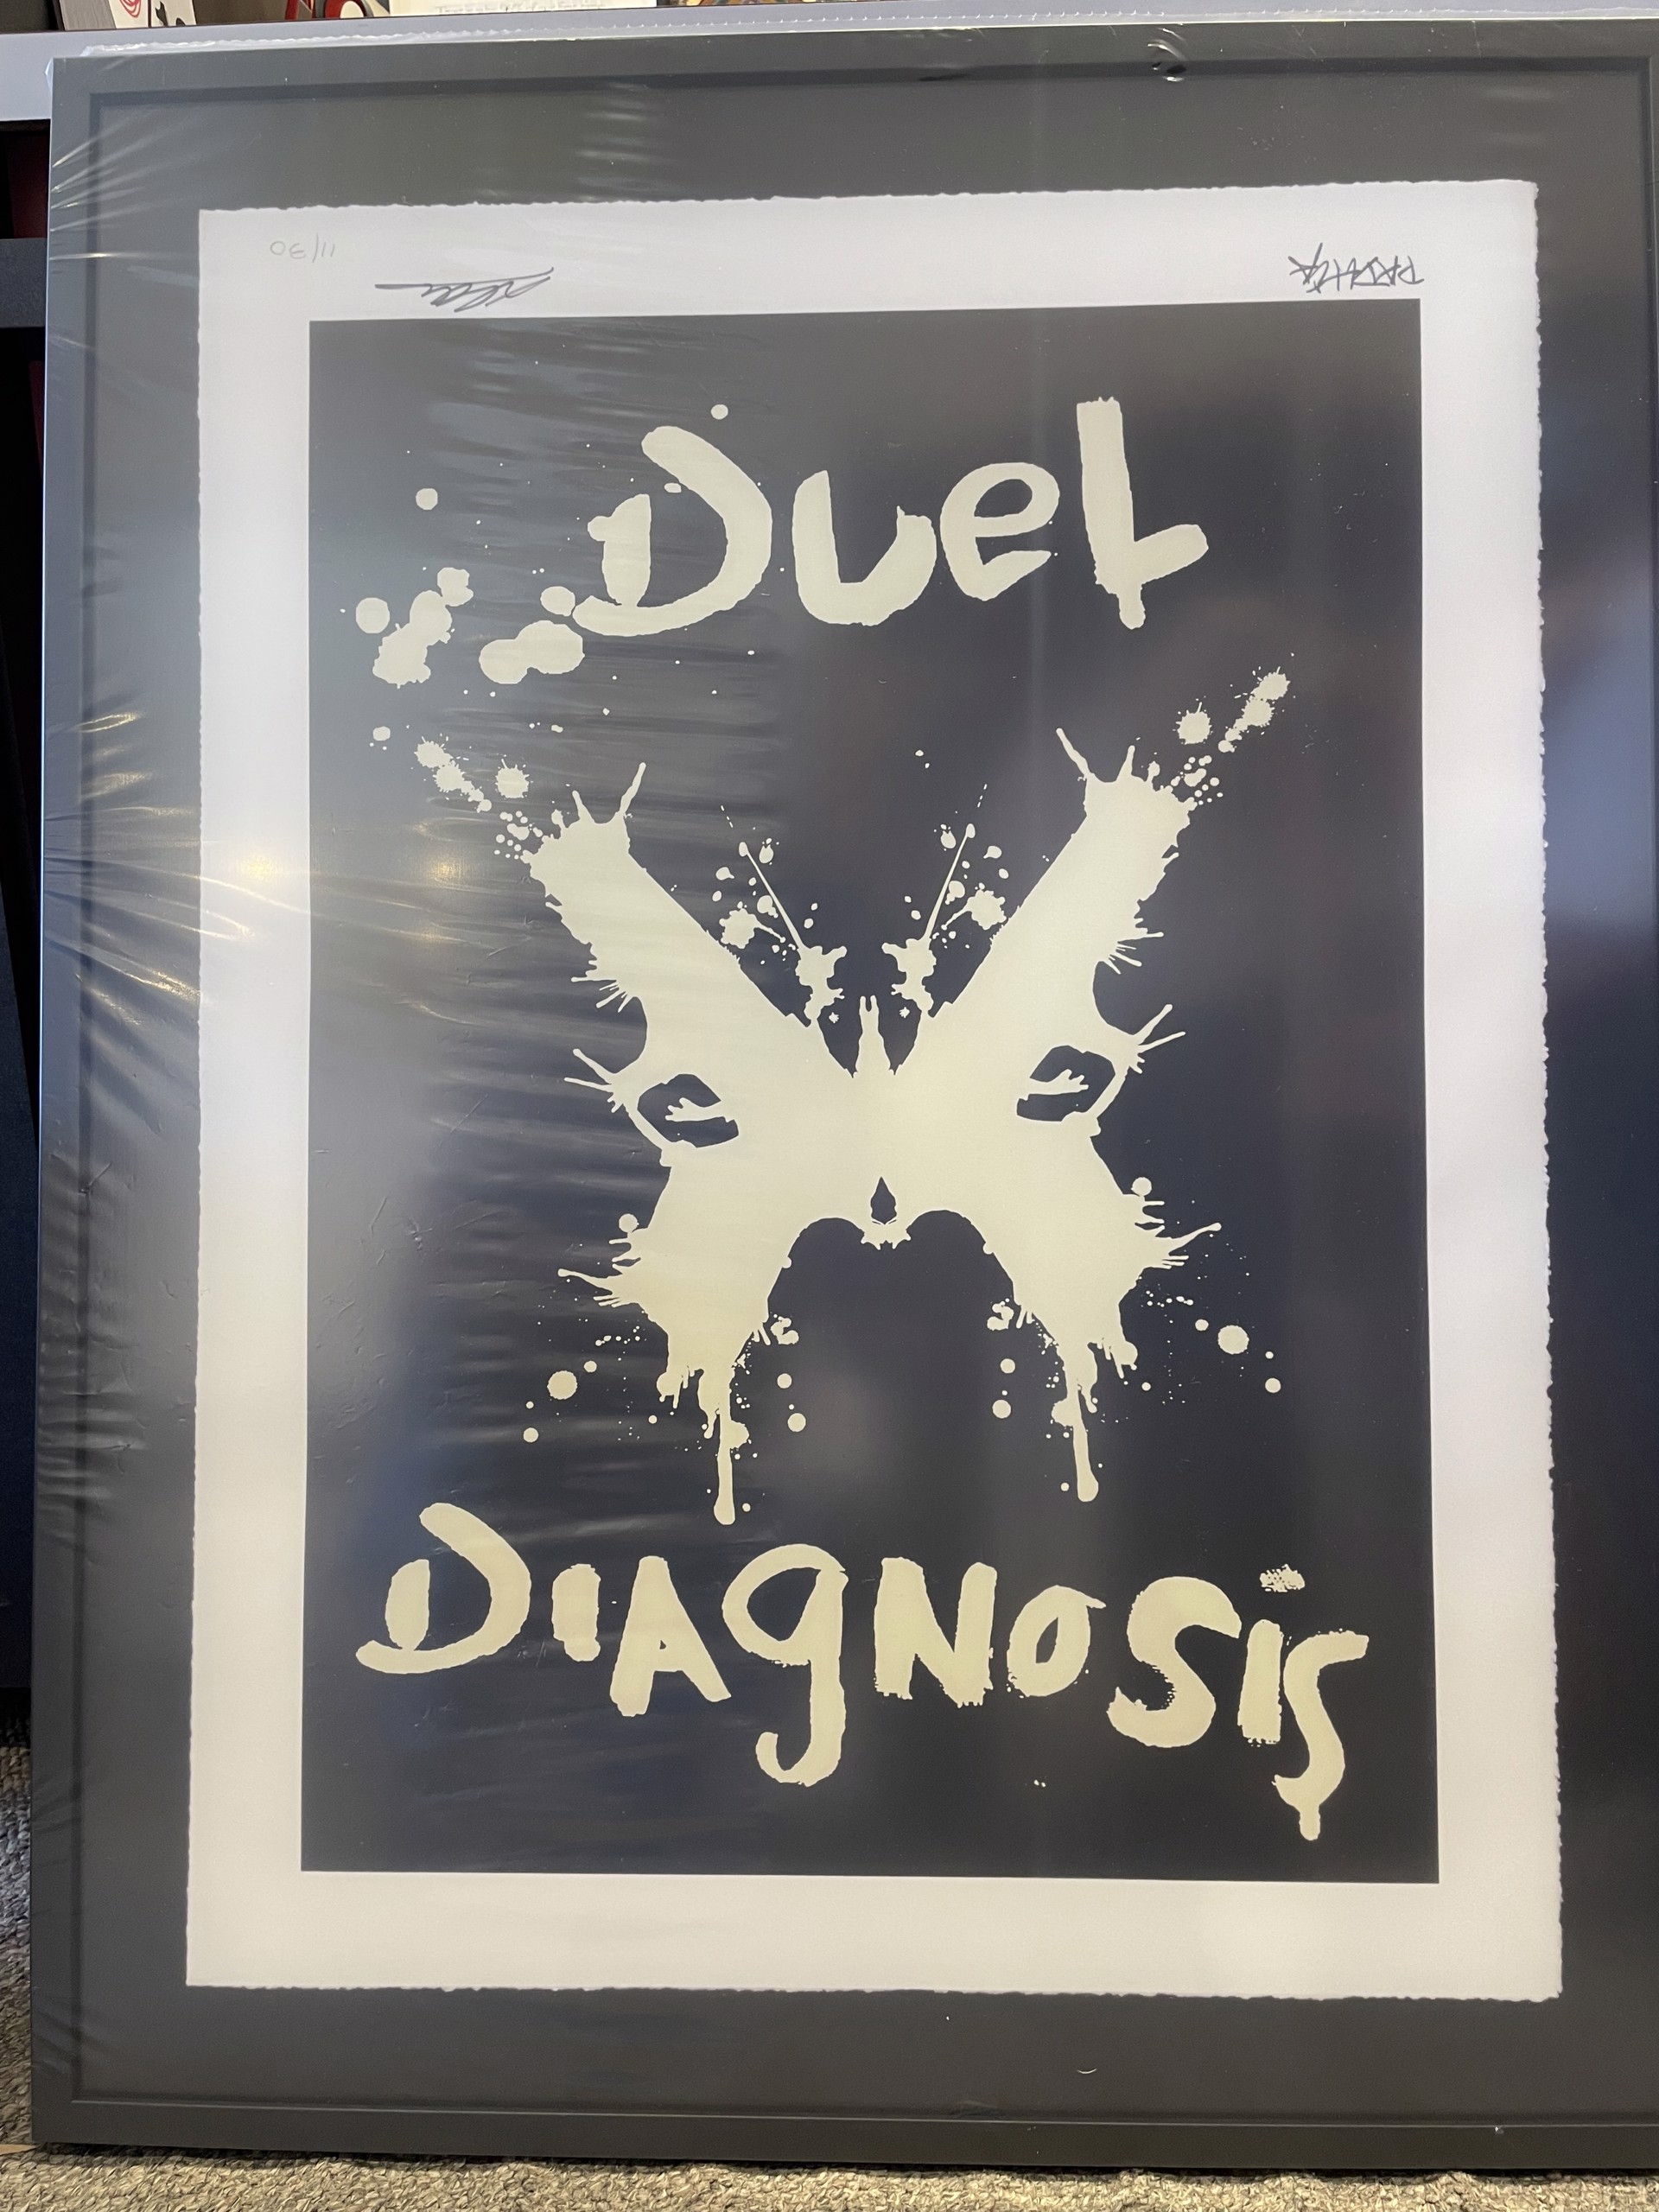 DD Emblem Silk Screen (11/30) by Duel Diagnosis